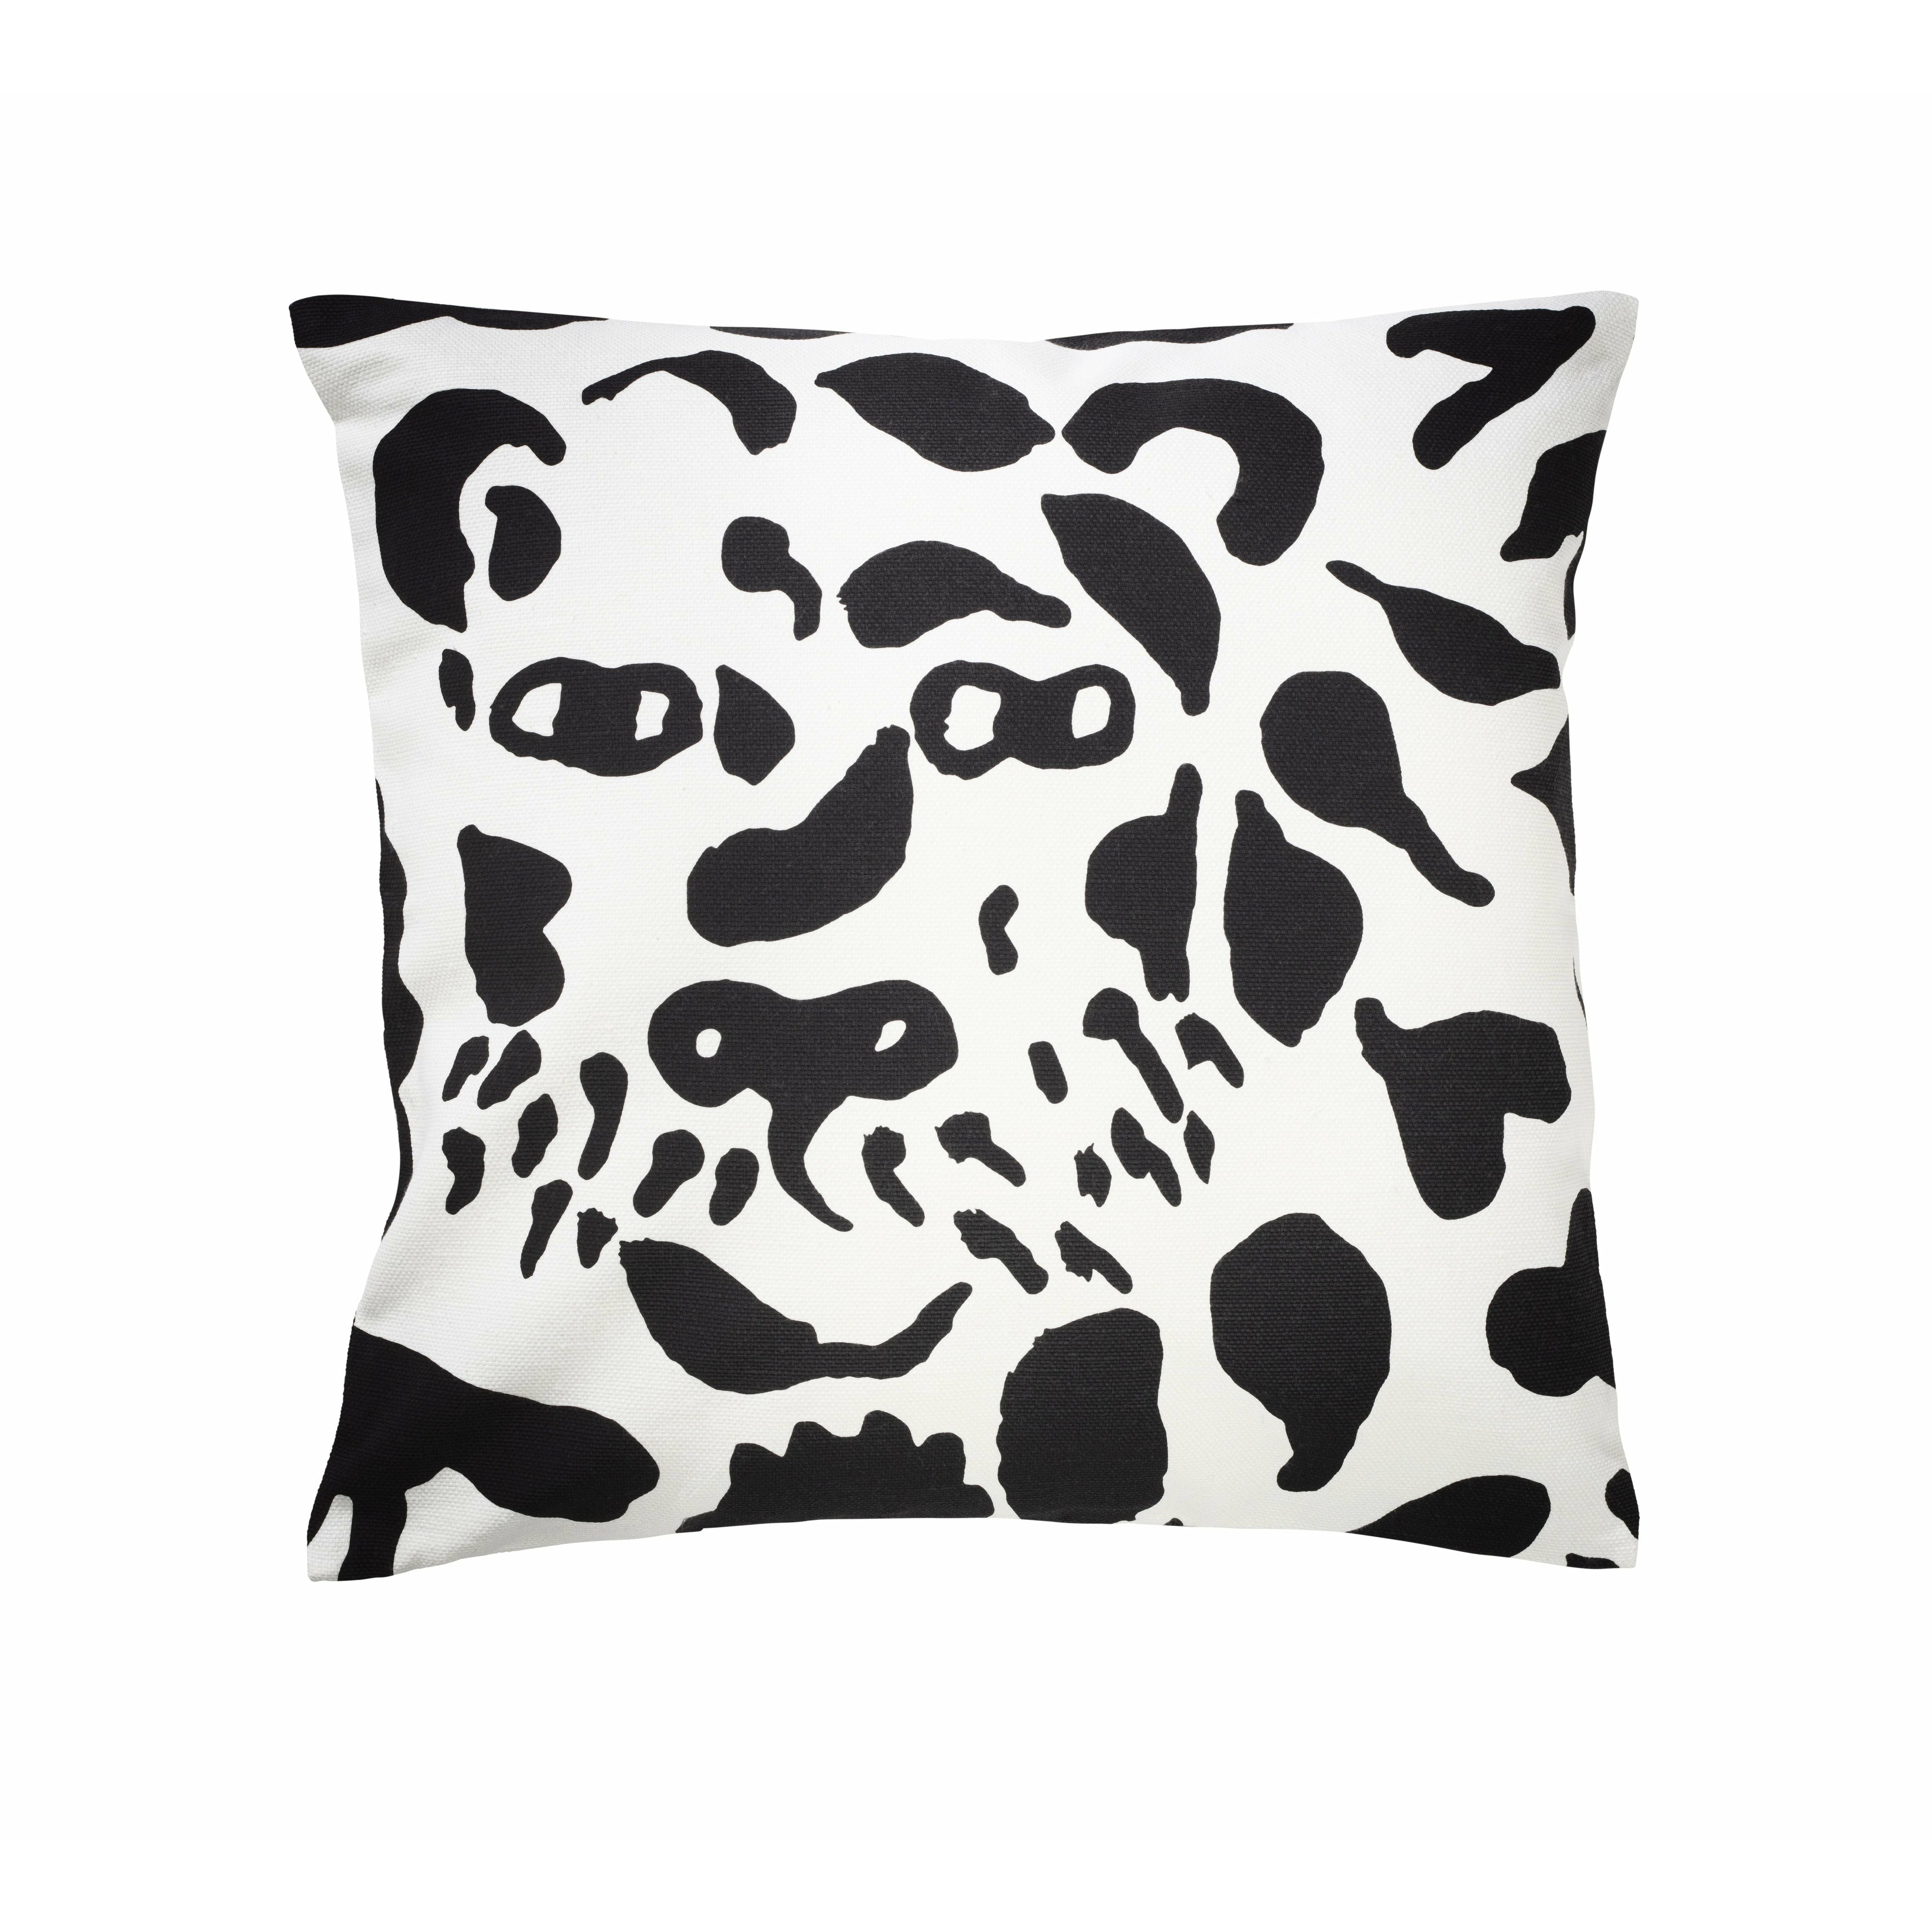 Iittala Oiva Toikka Pillowcase 47x47cm, Cheetah sort/hvid